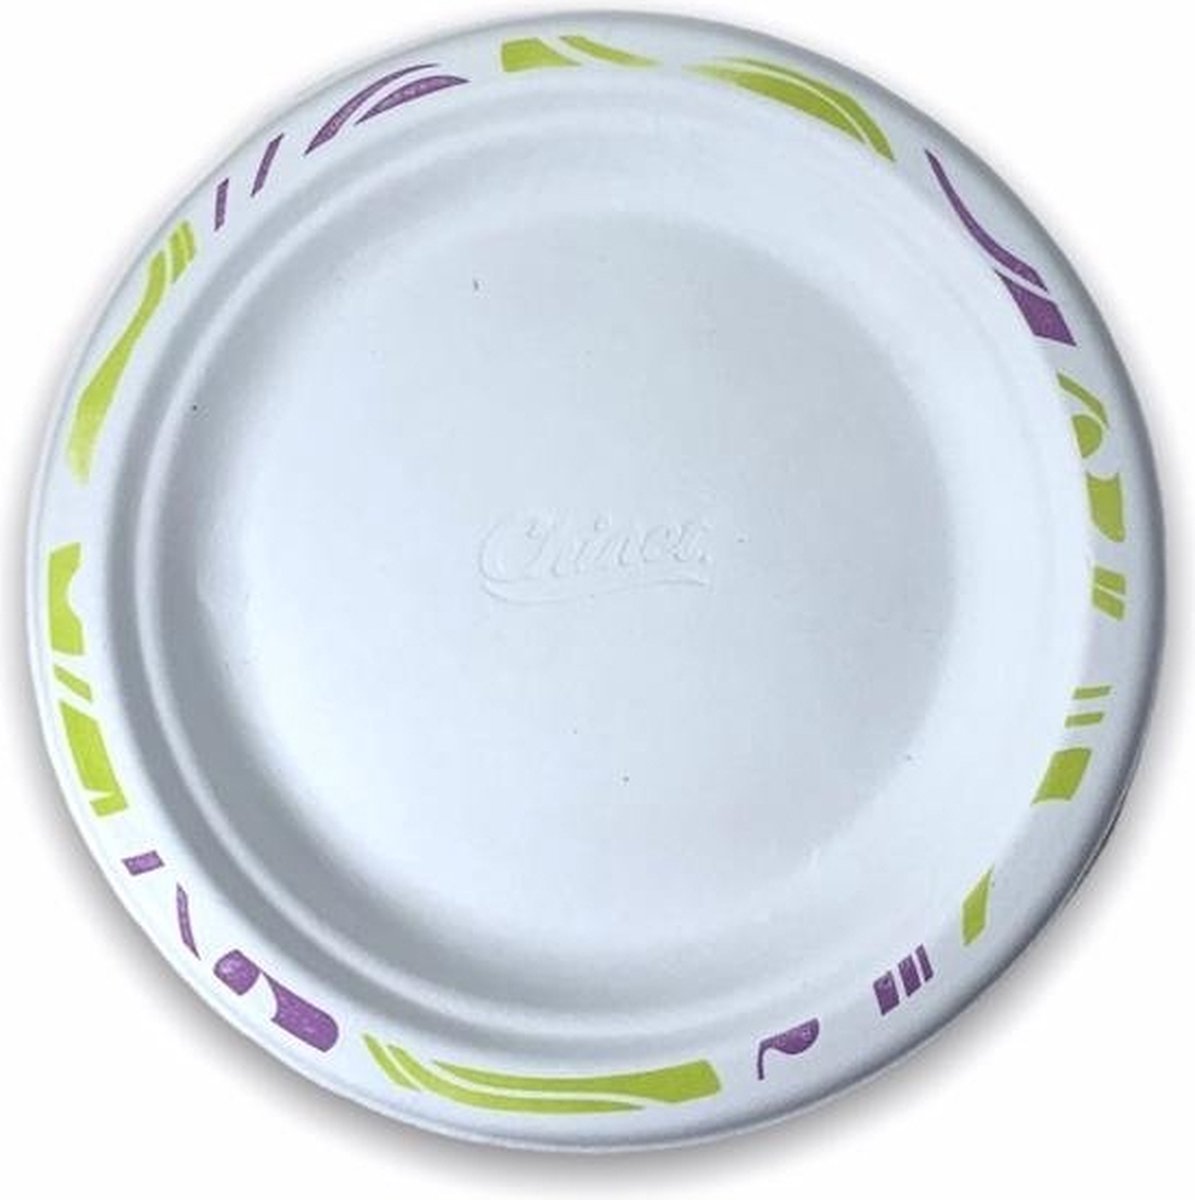 Witte Gegoten Vezel Borden 17 cm - 175 stuks - Chinet - Feest - Verjaardag - BBQ borden - bordjes - feest bordjes - wegwerp bordjes - Biologisch afbreekbaar/composteerbaar - Duurzaam - Milieuvriendelijke -